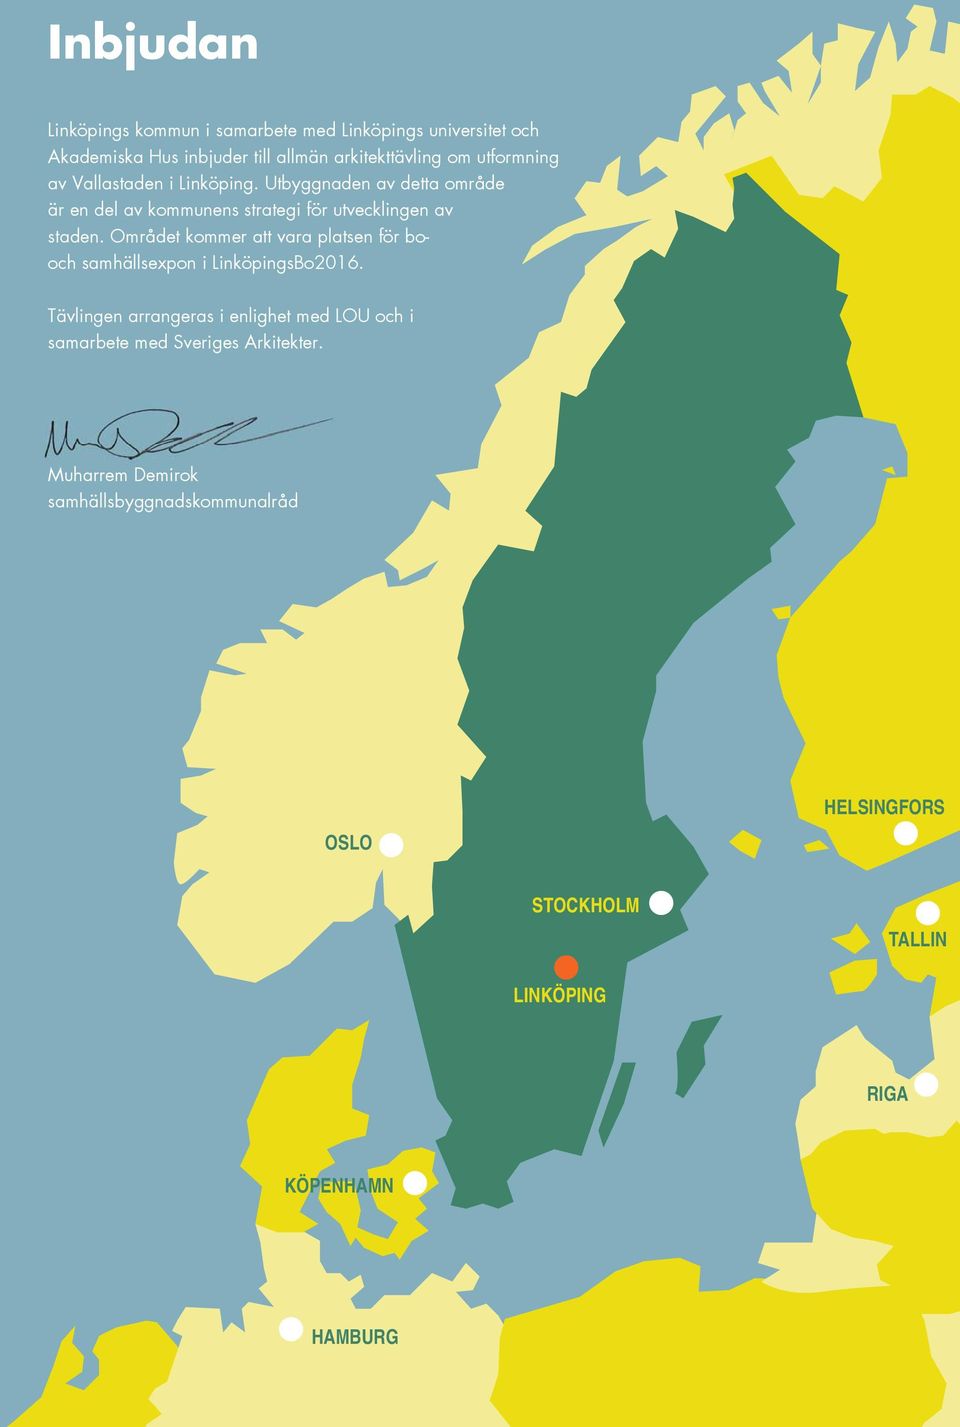 Området kommer att vara plate för booch amhällexpo i LiköpiBo2016.